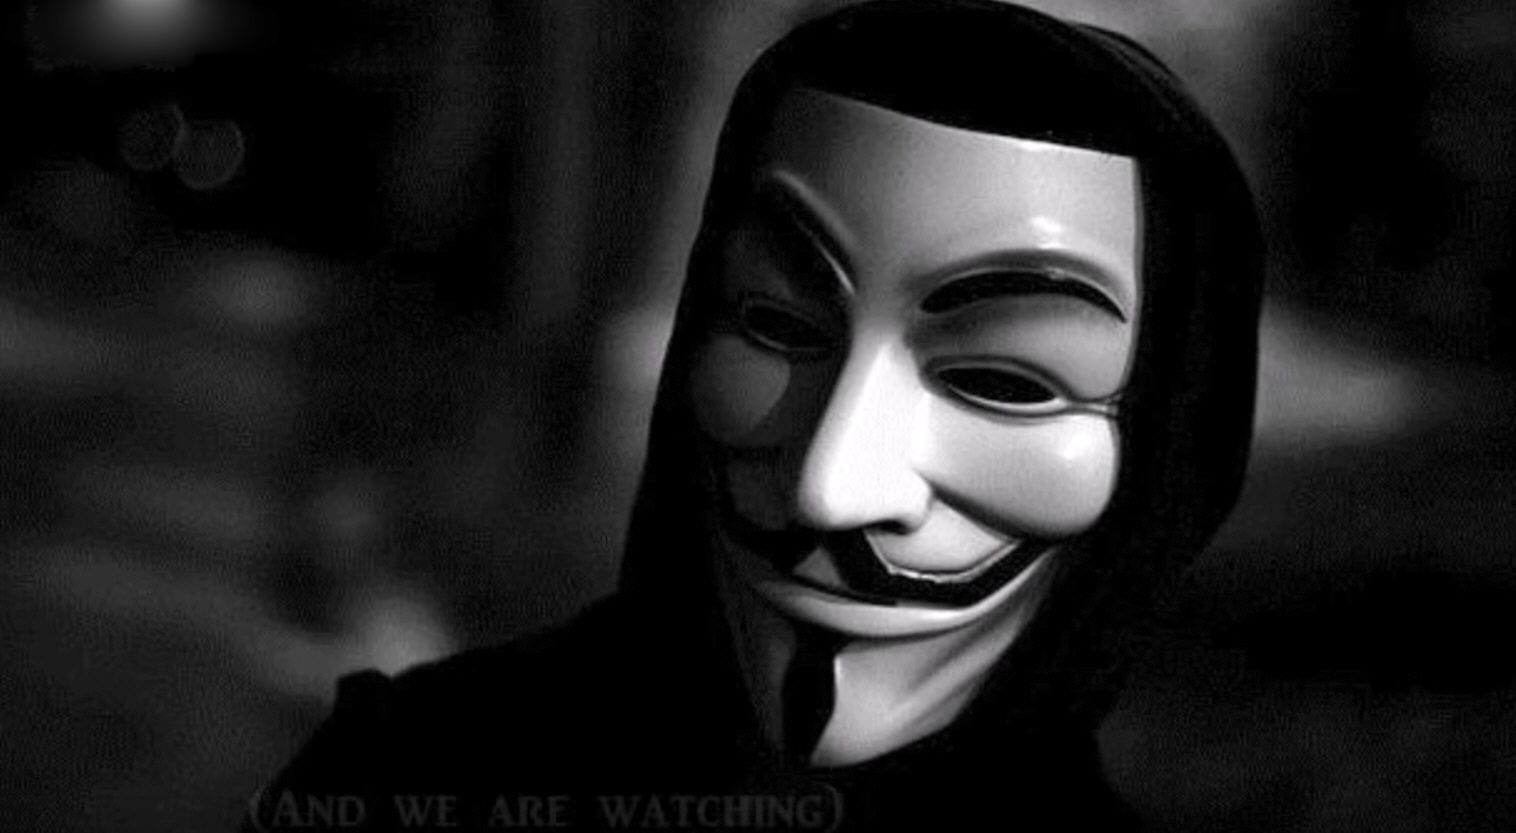 Οι Anonymous «έριξαν» τη σελίδα των ηλεκτρονικών πλειστηριασμών